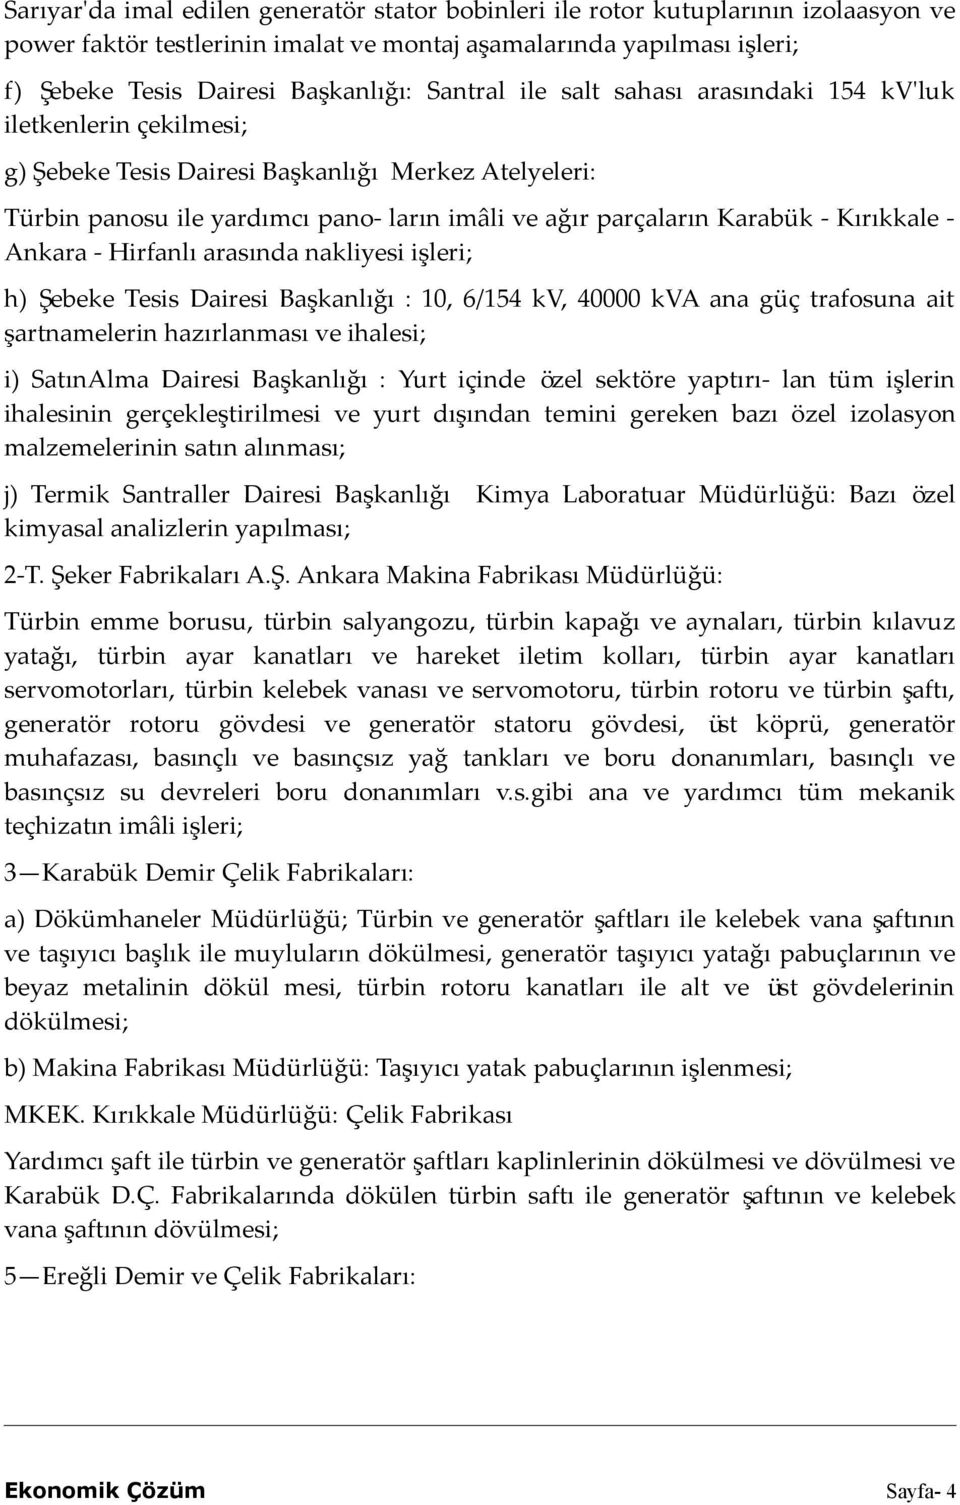 Kırıkkale - Ankara - Hirfanlı arasında nakliyesi işleri; h) Şebeke Tesis Dairesi Başkanlığı : 10, 6/154 kv, 40000 kva ana güç trafosuna ait şartnamelerin hazırlanması ve ihalesi; i) SatınAlma Dairesi